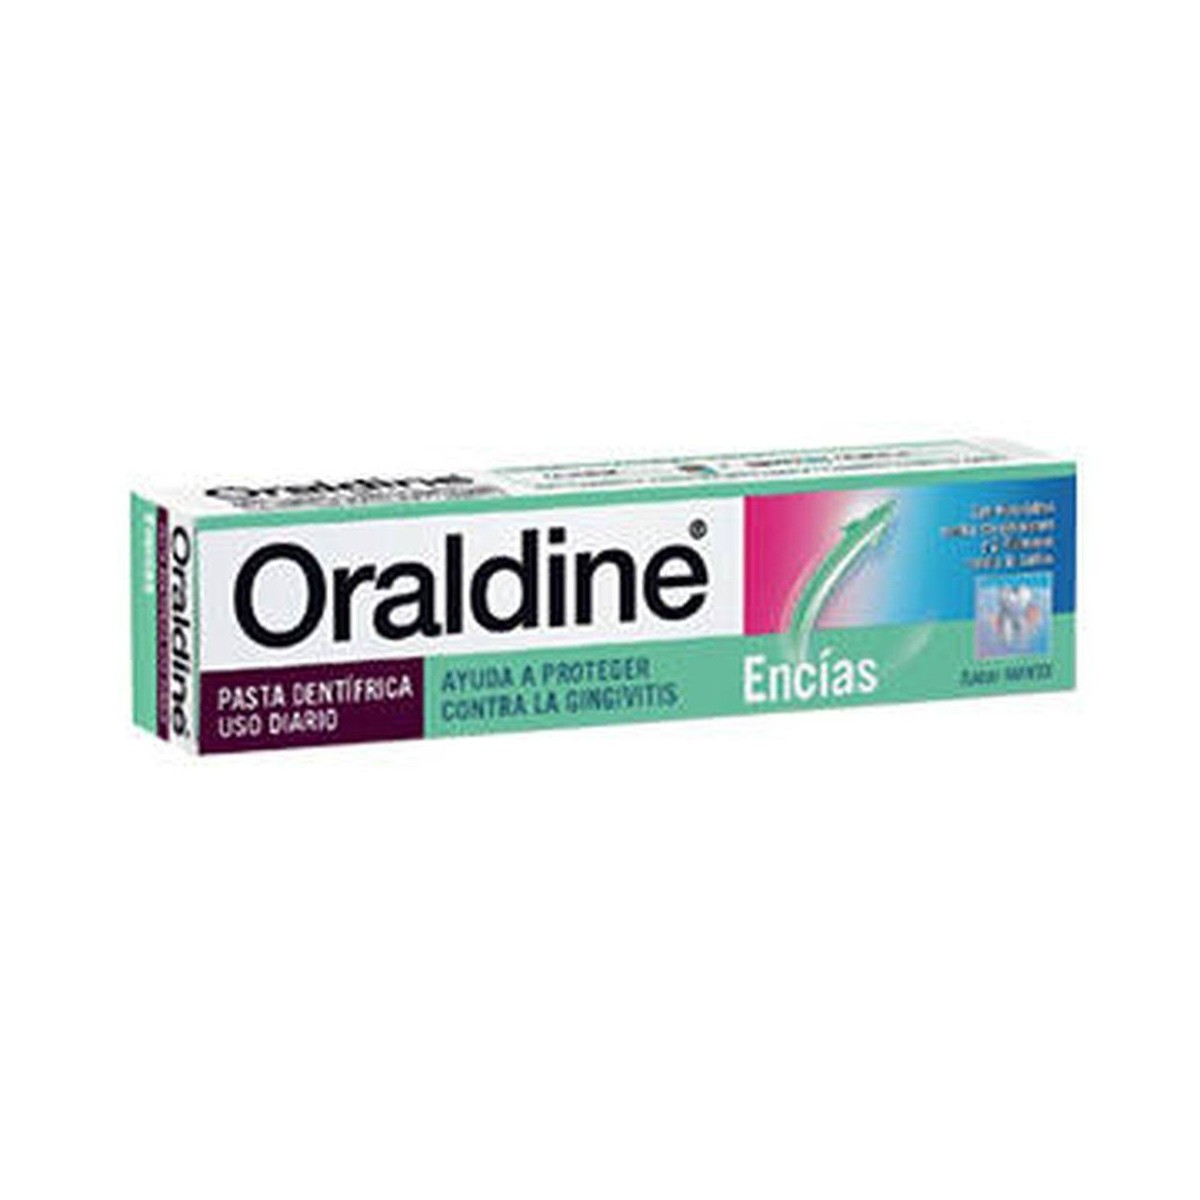 oraldine-pasta-125-ml